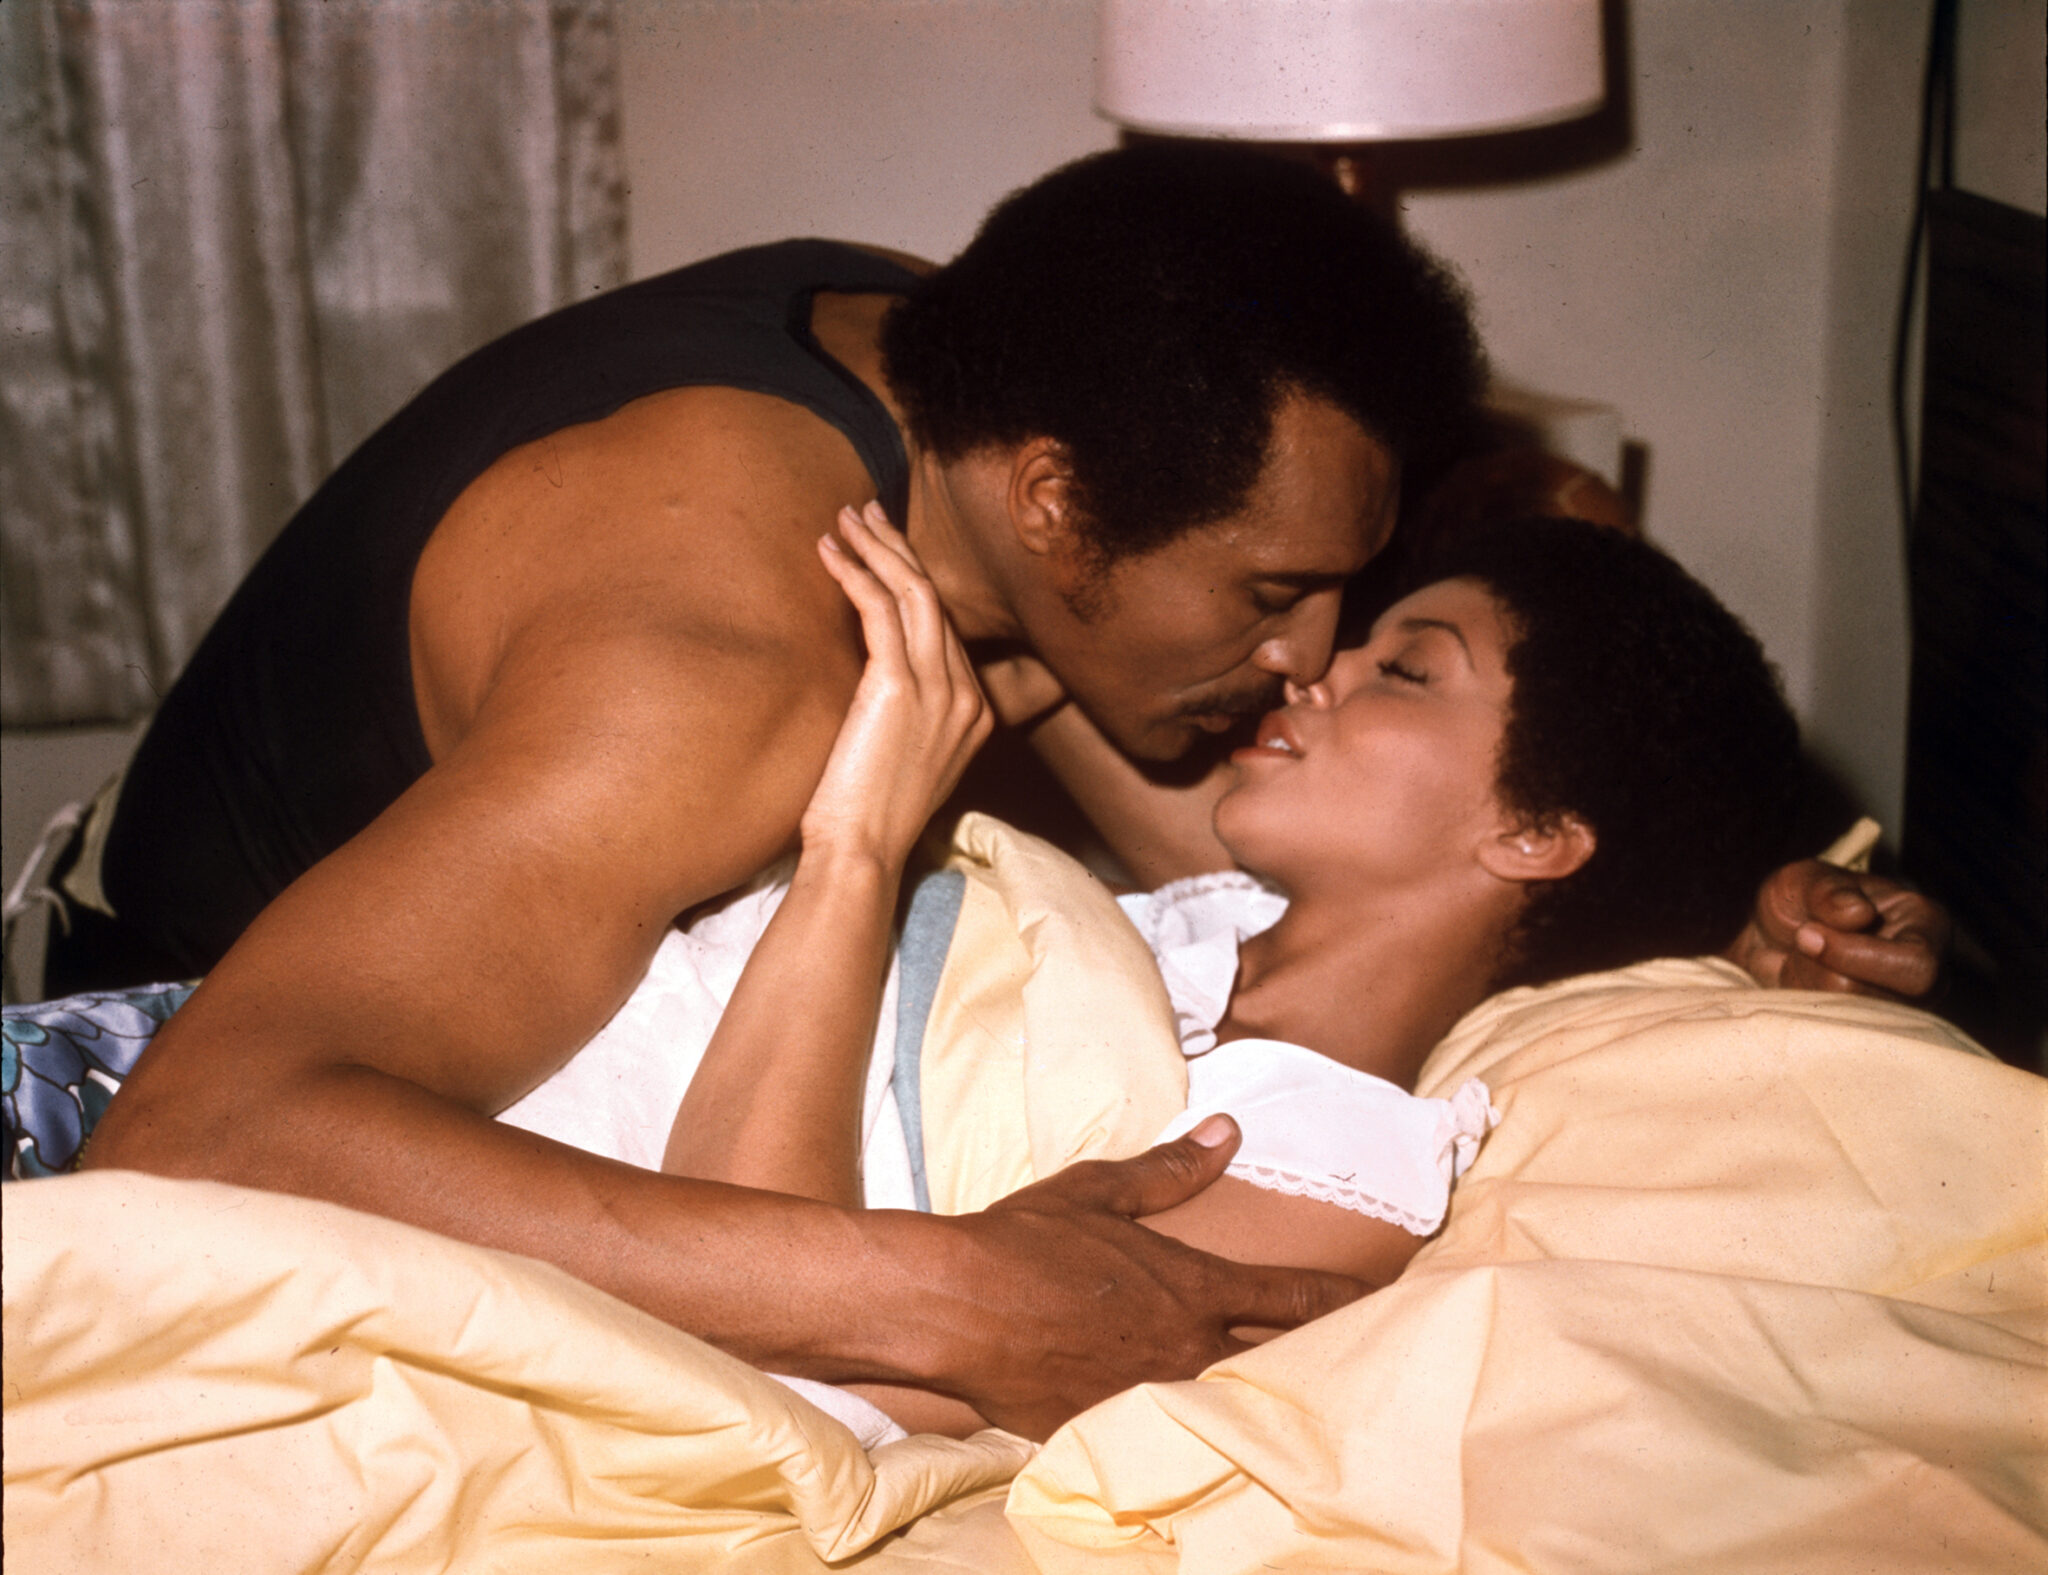 Mamuwalde "Blacula" (William Marshall) und Tina (Vonetta McGee) liegen gemeinsam in einem Bett, halten sich zärtlich in den Armen und deuten einen Kuss an.